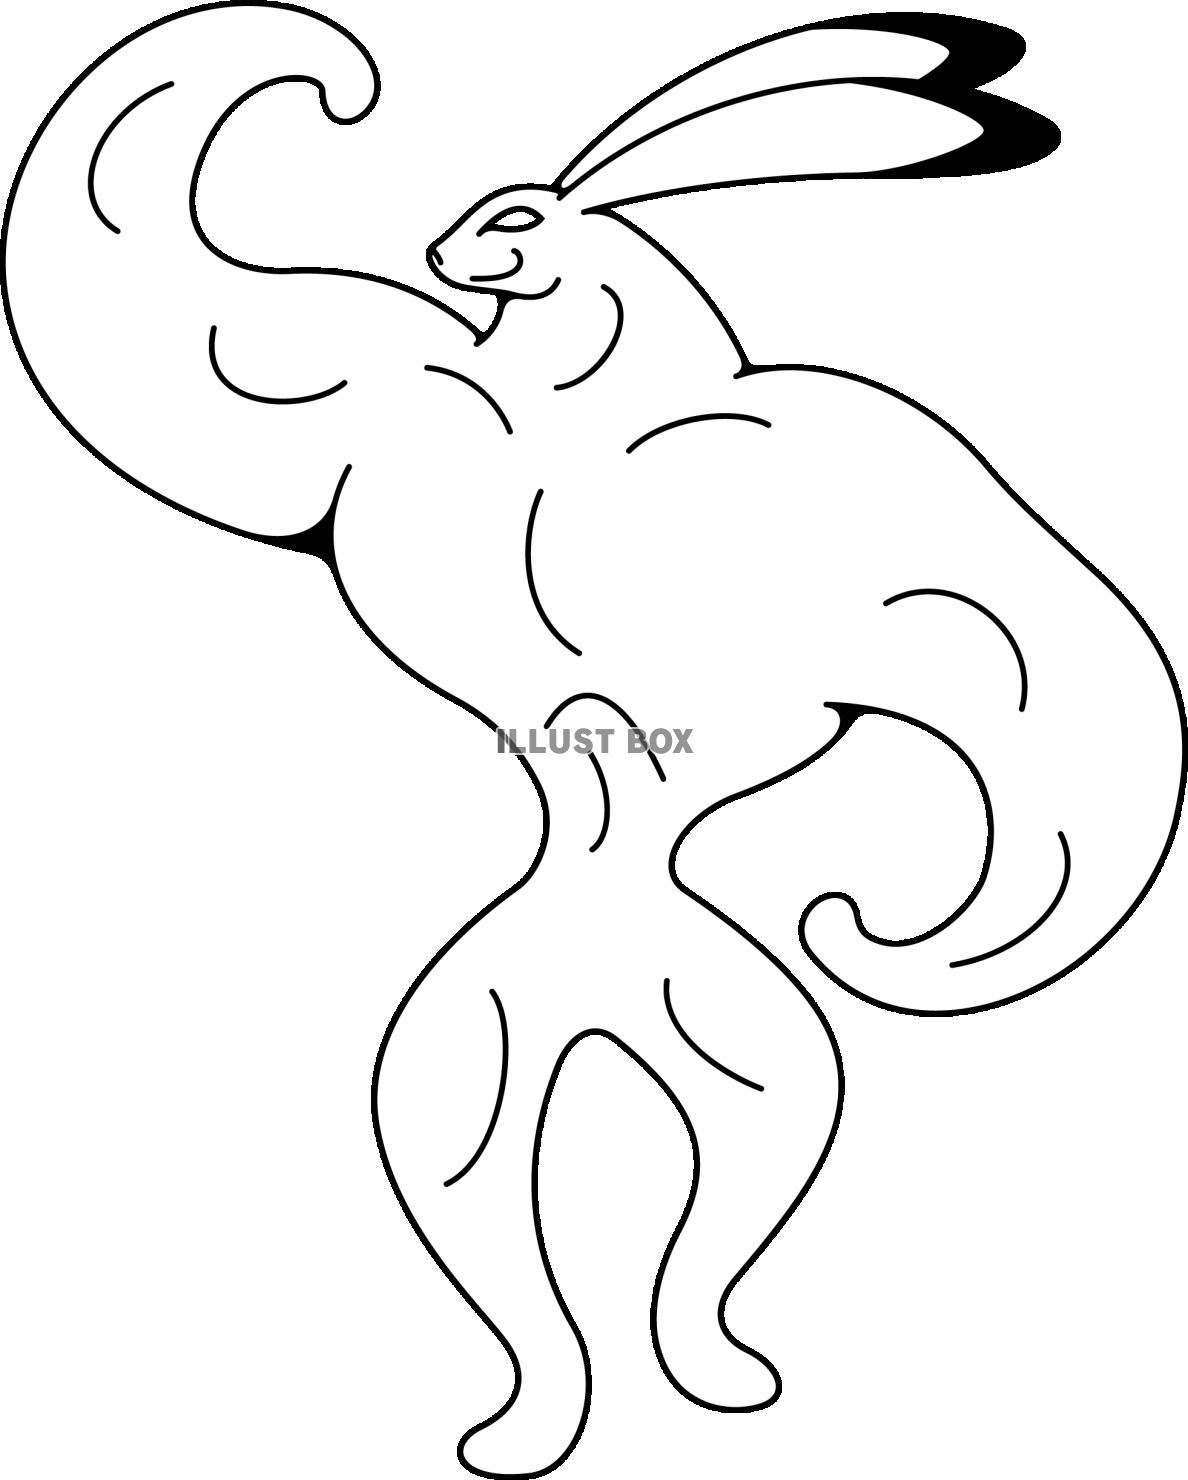 無料イラスト かっこいいマッチョなウサギのヒーロー モノクロ線画